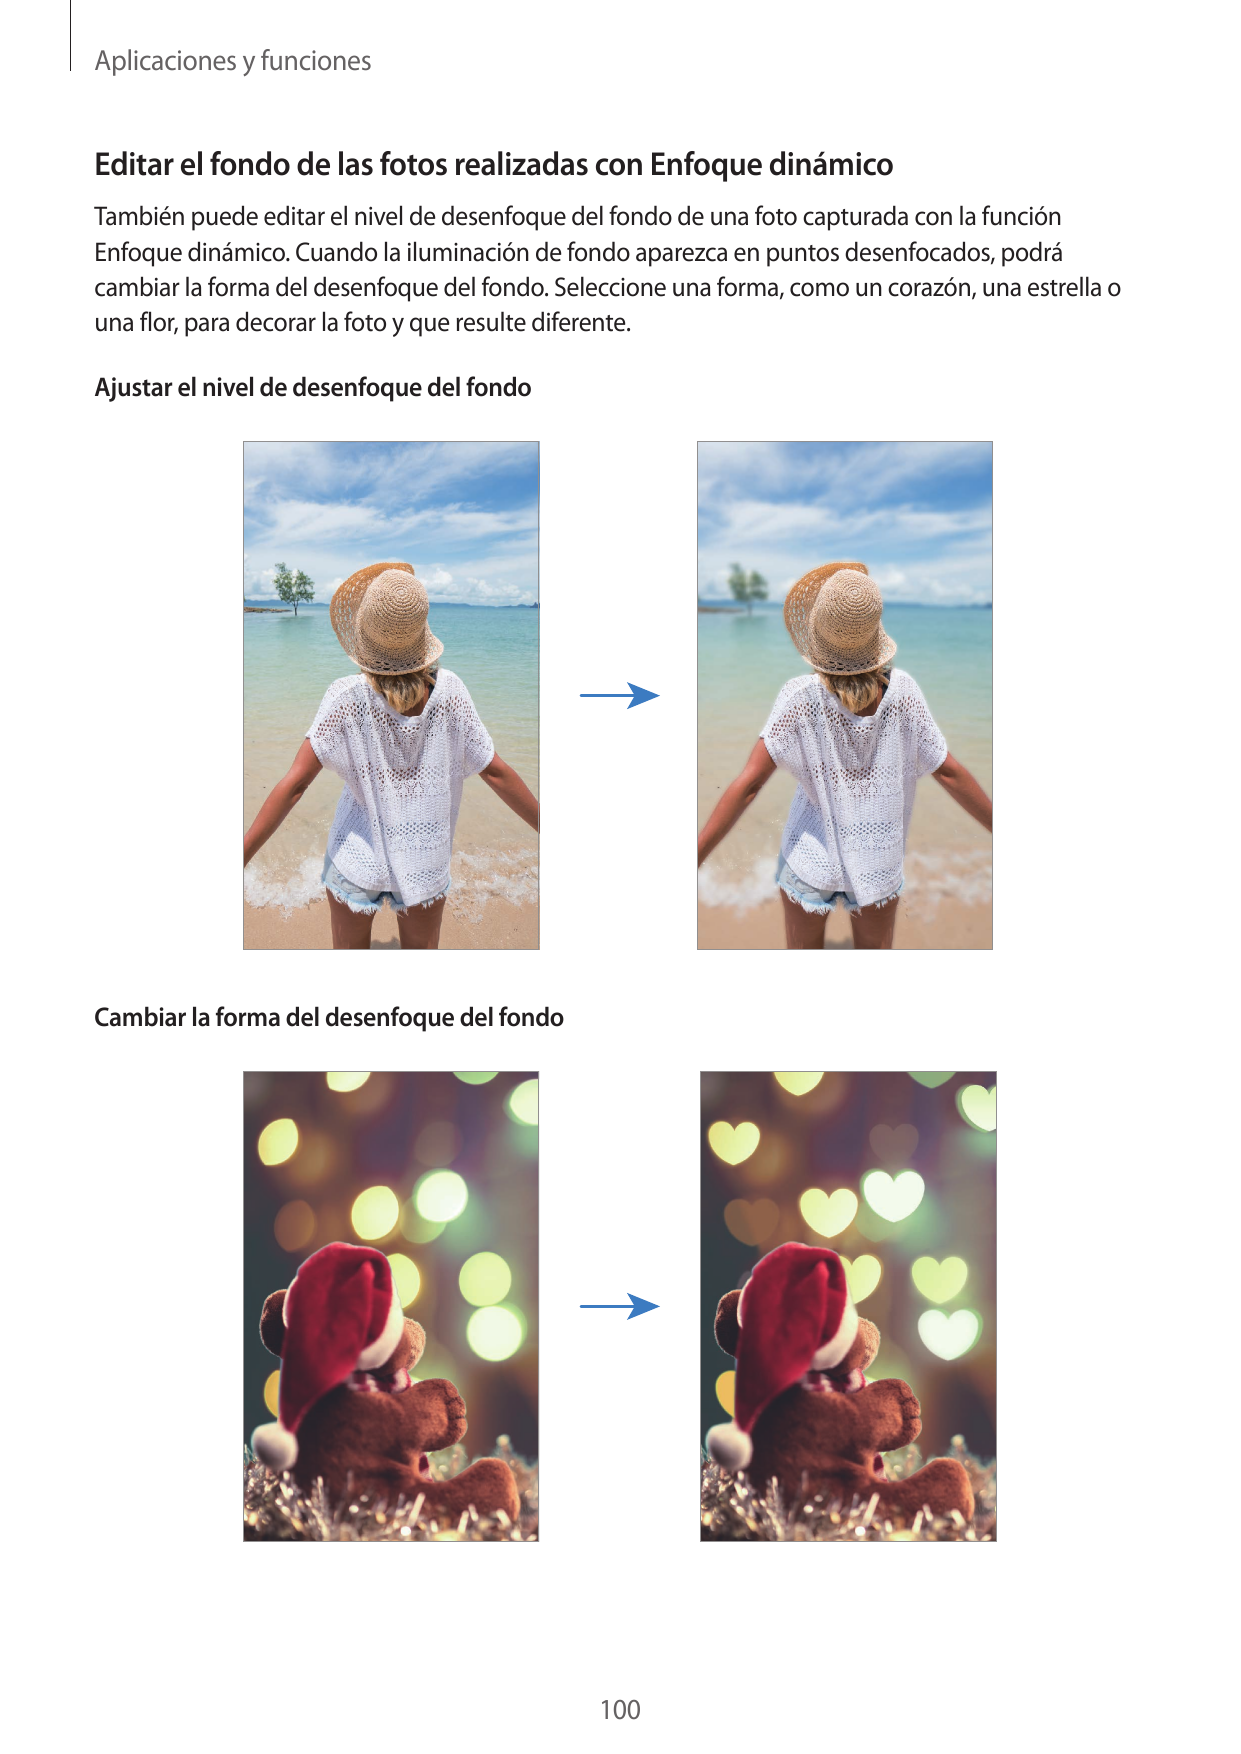 Aplicaciones y funcionesEditar el fondo de las fotos realizadas con Enfoque dinámicoTambién puede editar el nivel de desenfoque 